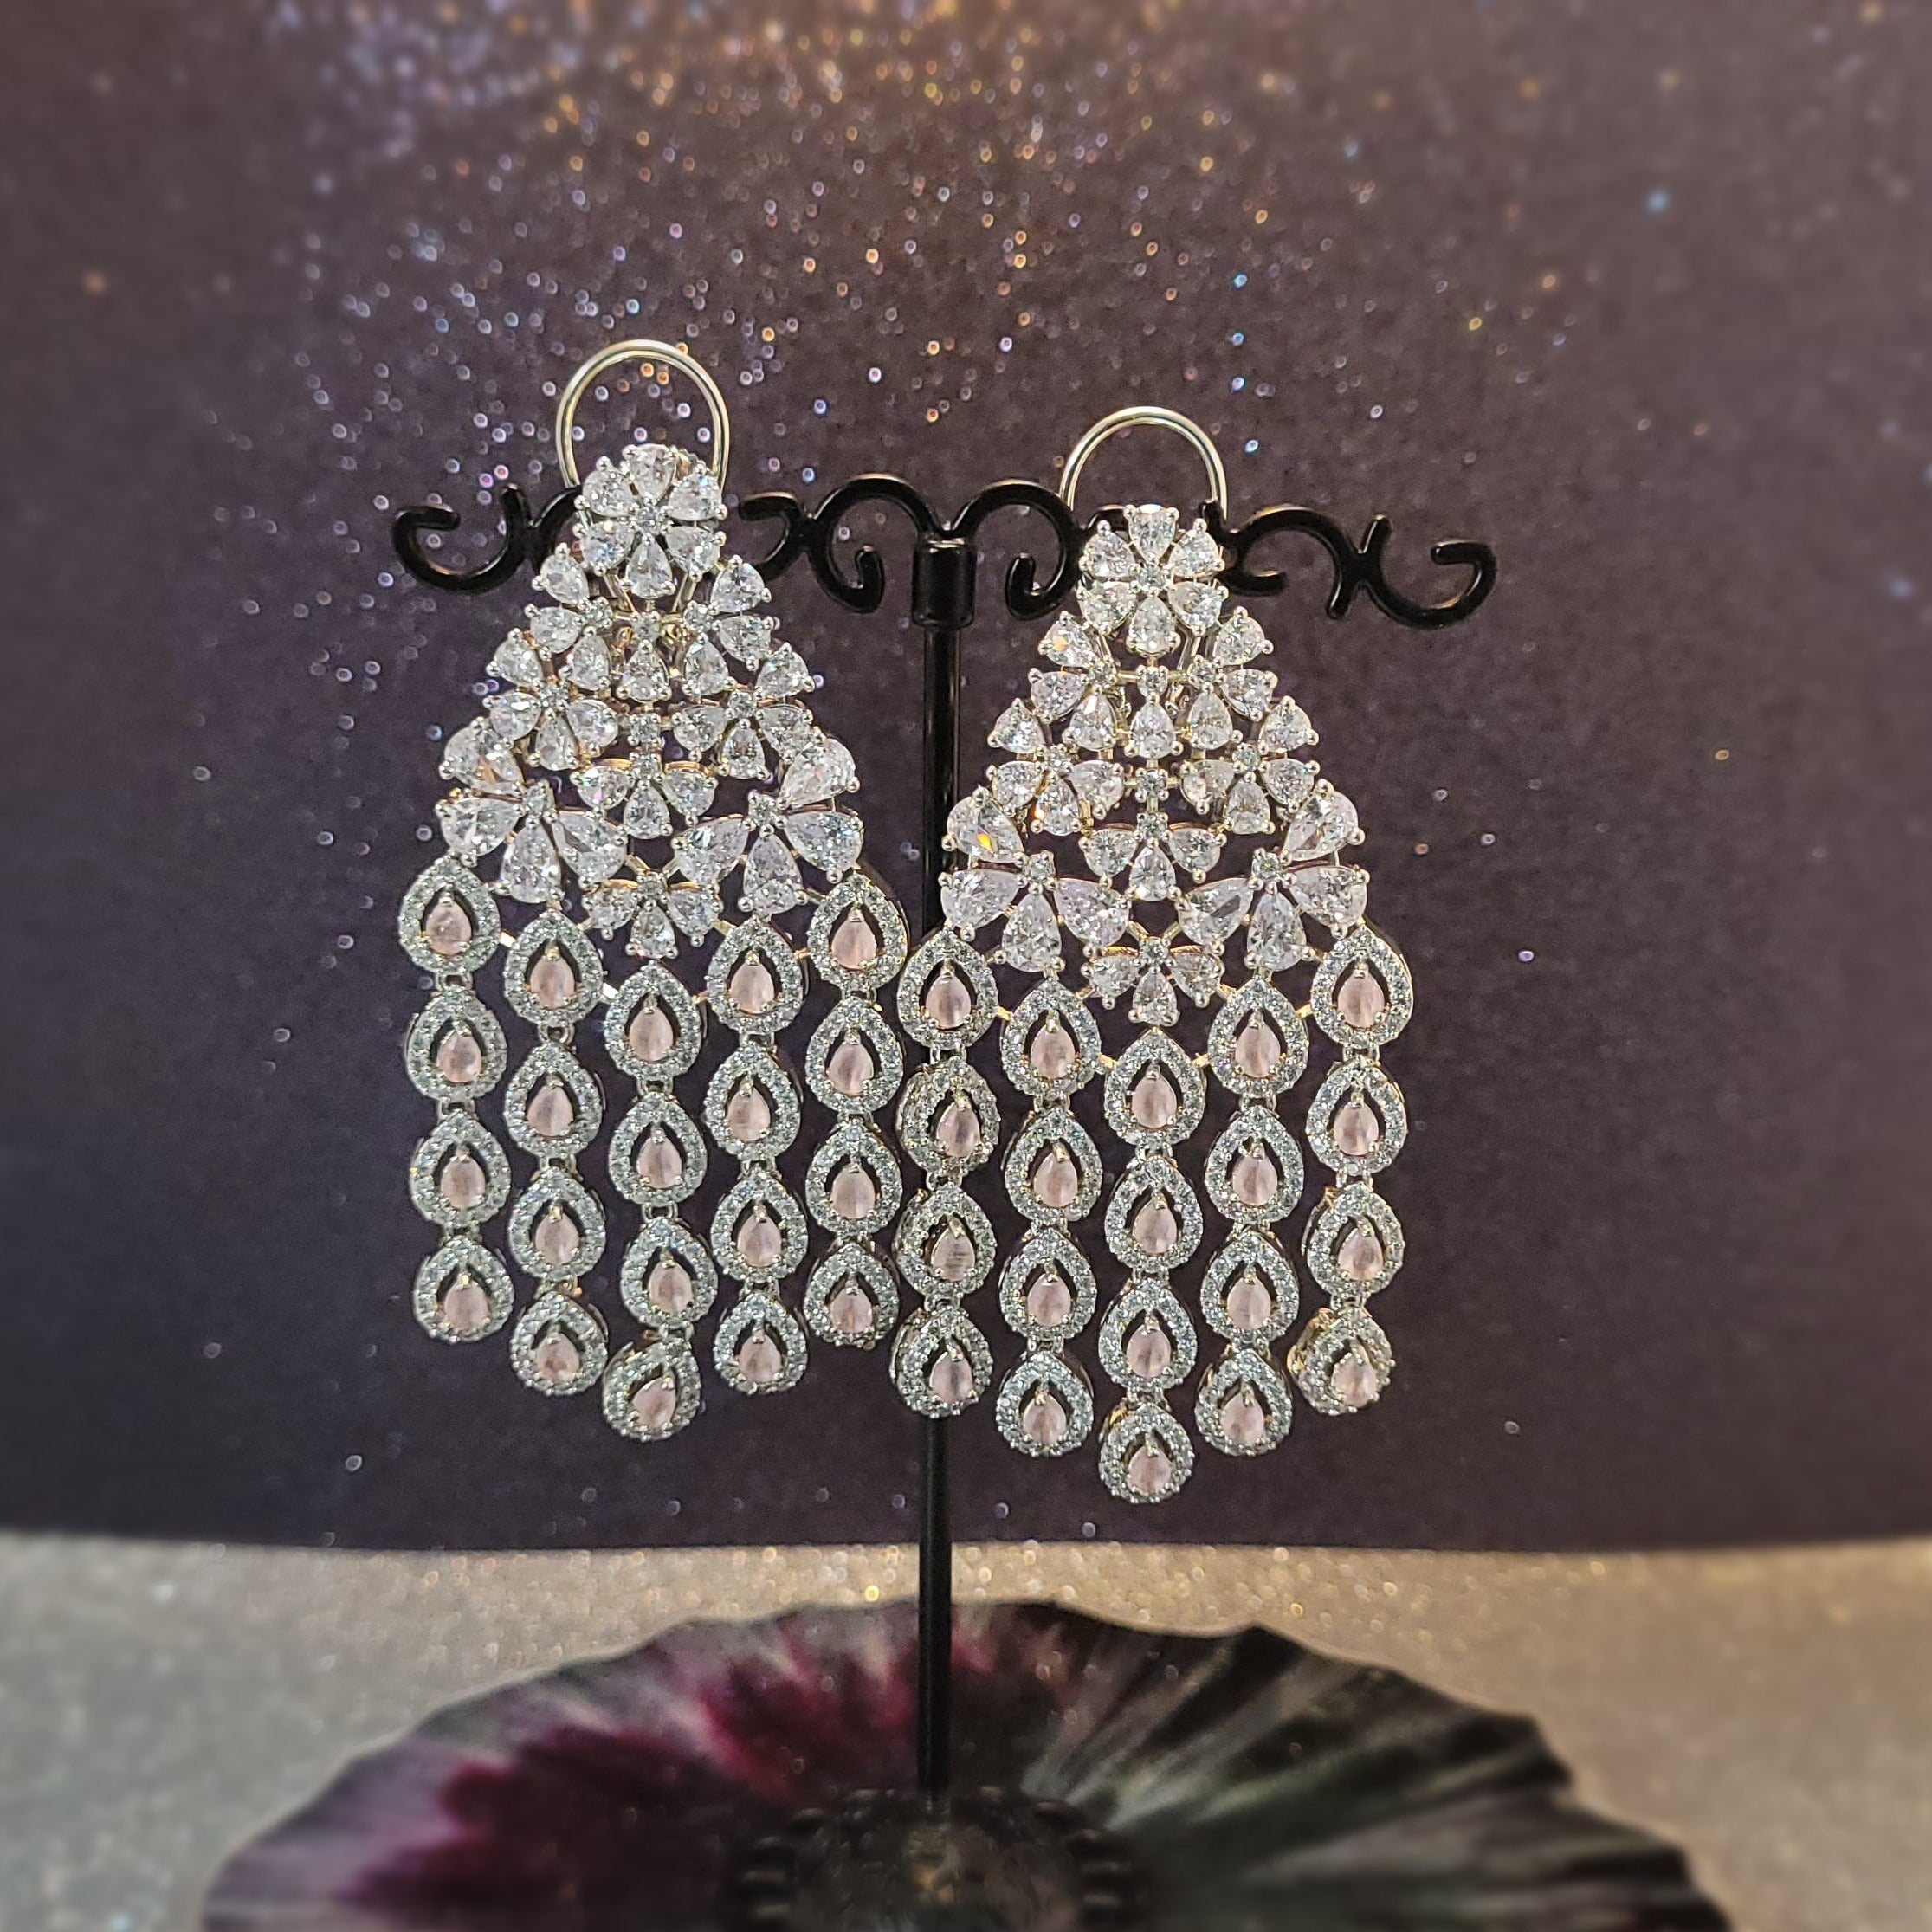 Women Jewelry  - Chandelier Earrings - American Diamond- Peacock Feather inspired